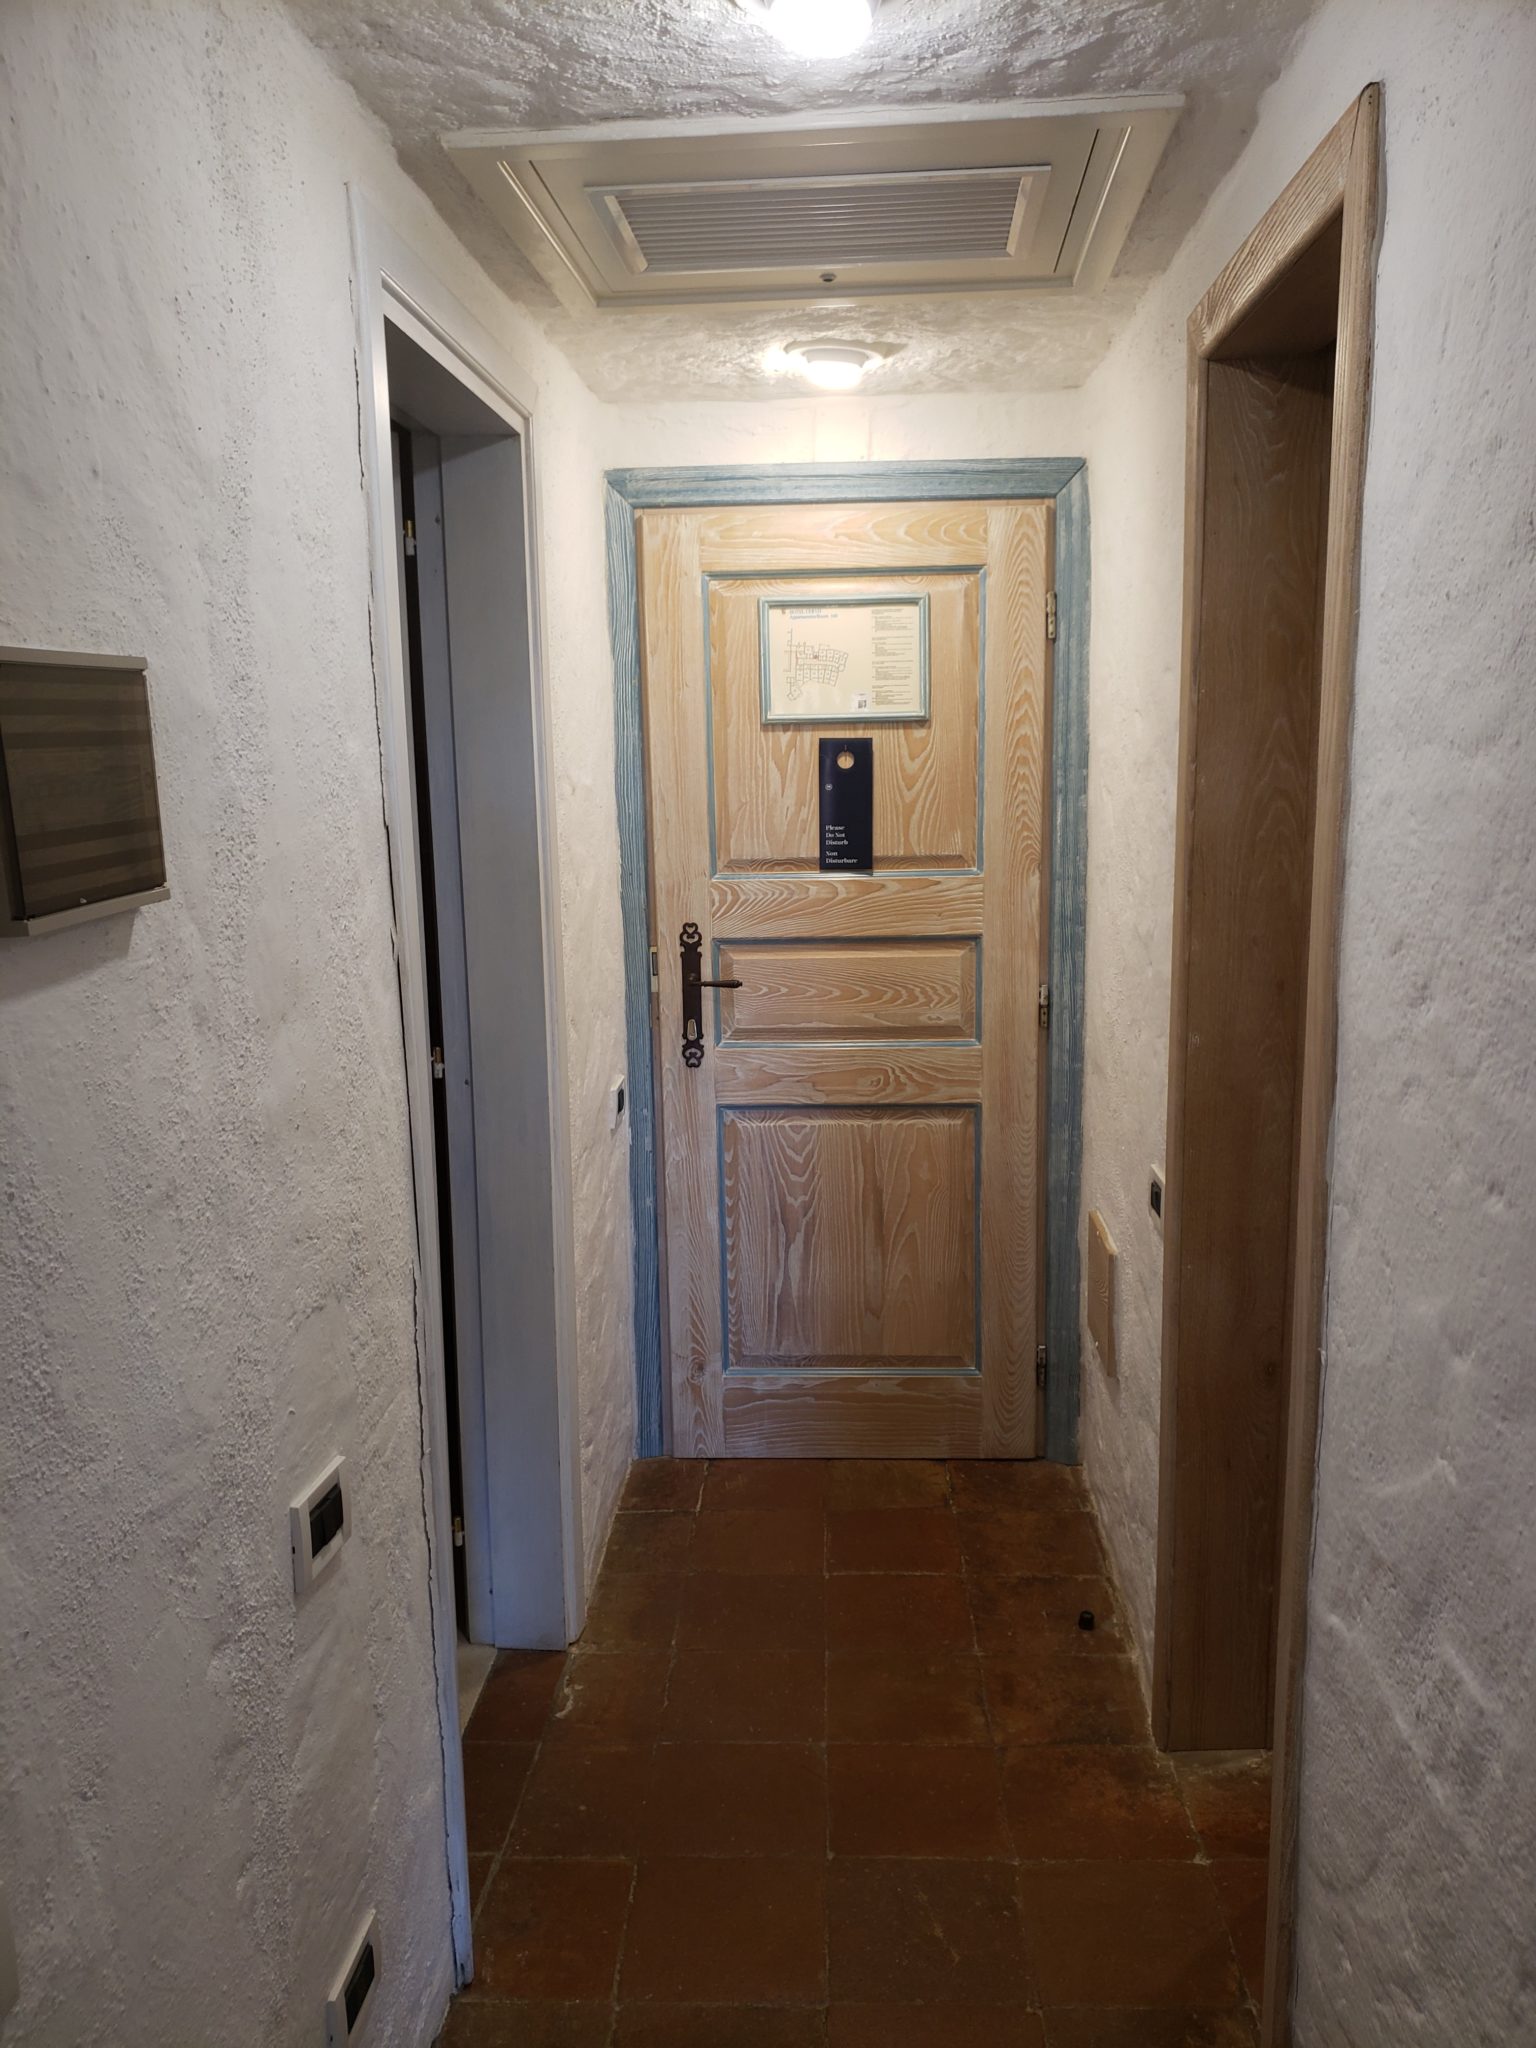 a door in a hallway